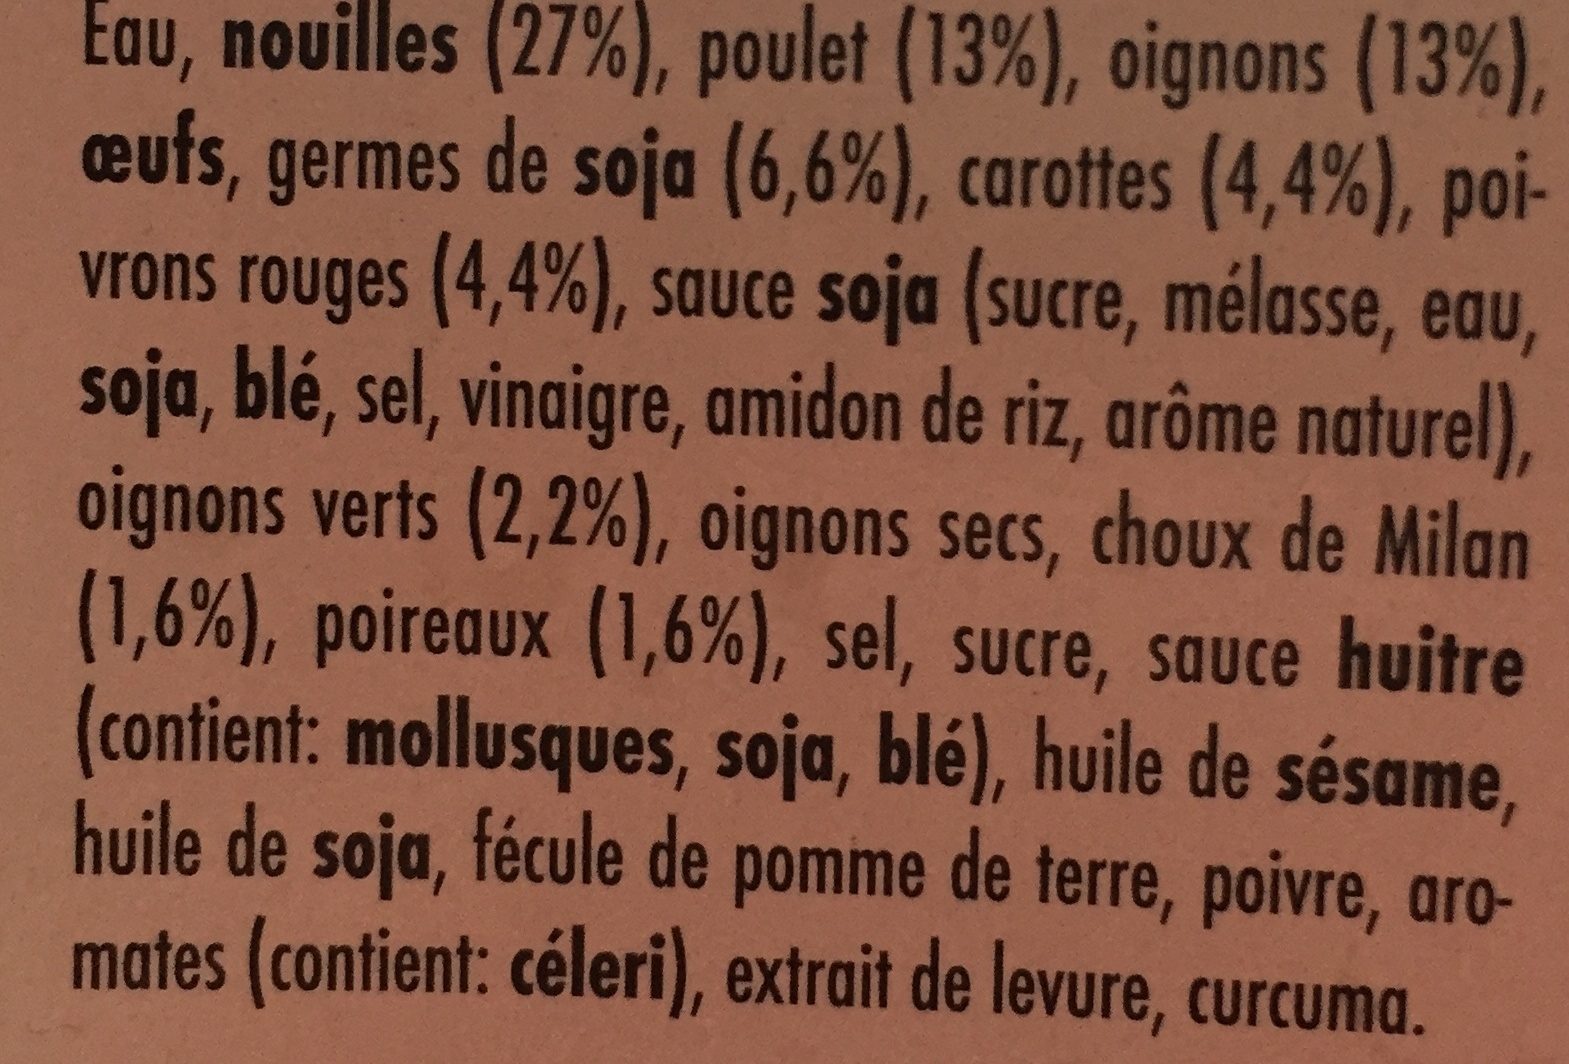 Wok nouilles - Ingredients - fr